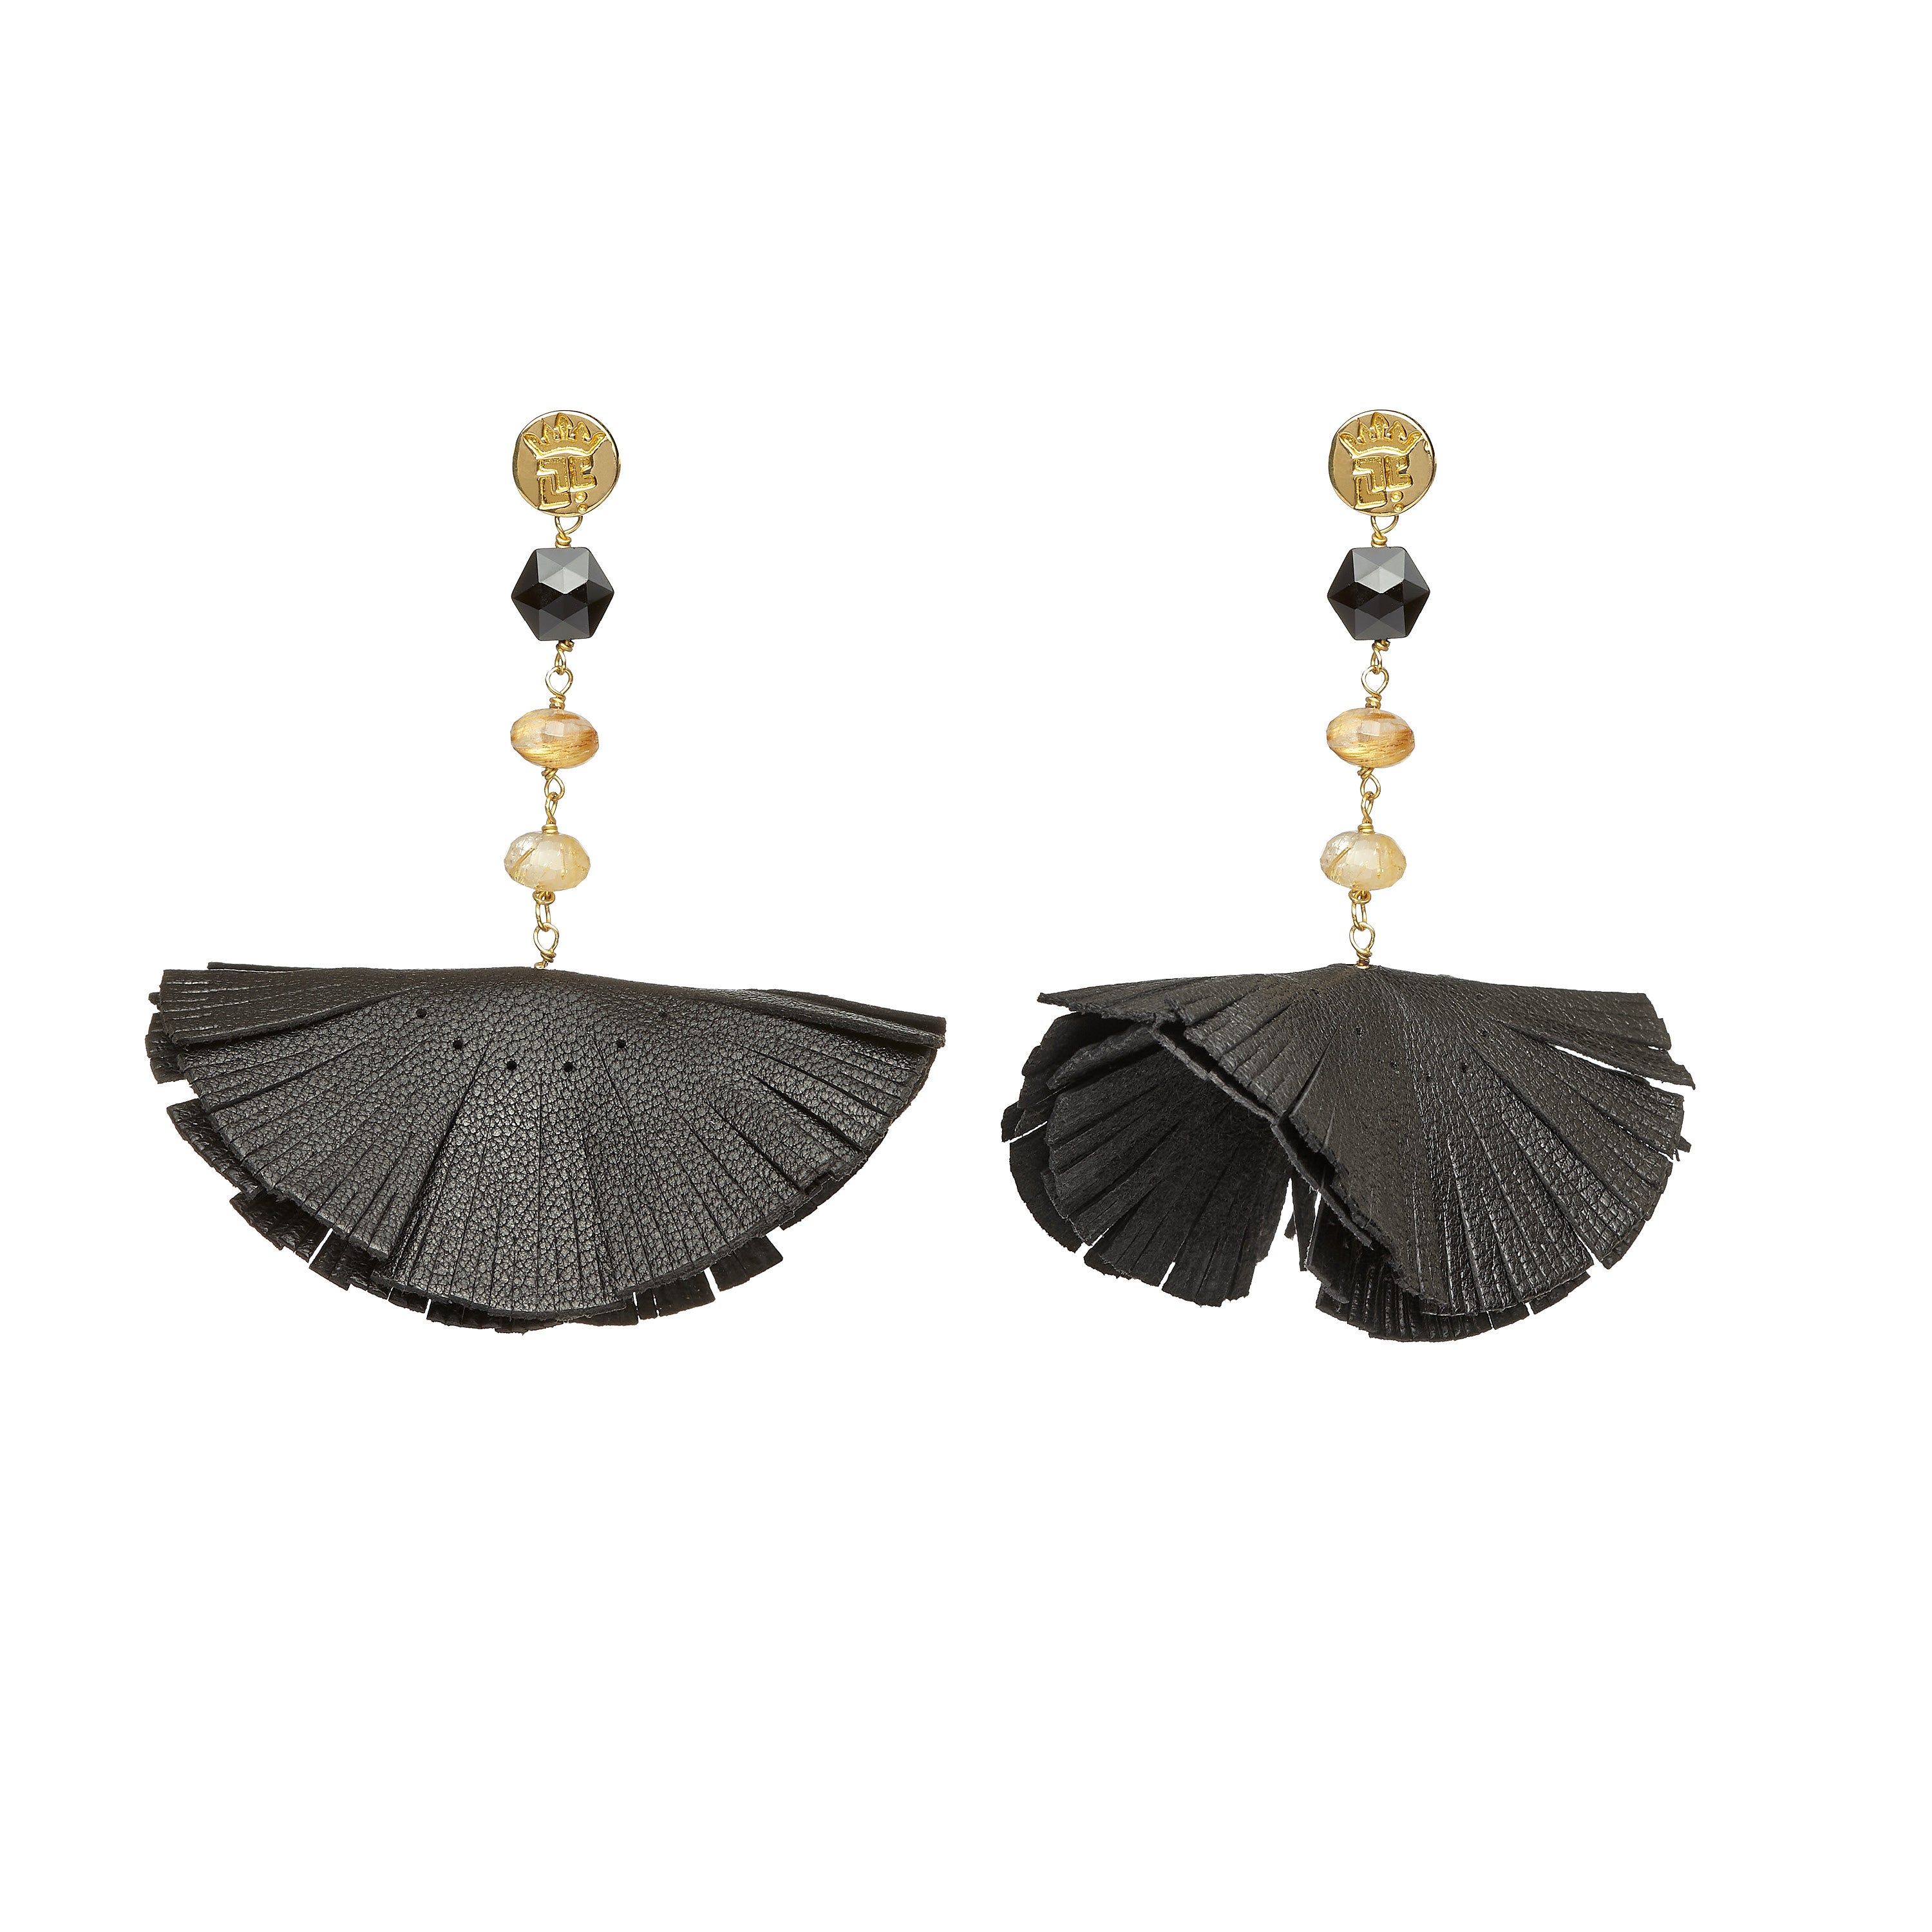 Tassel “Bluebell” Earrings with Black Leather, Garnet and Quartz